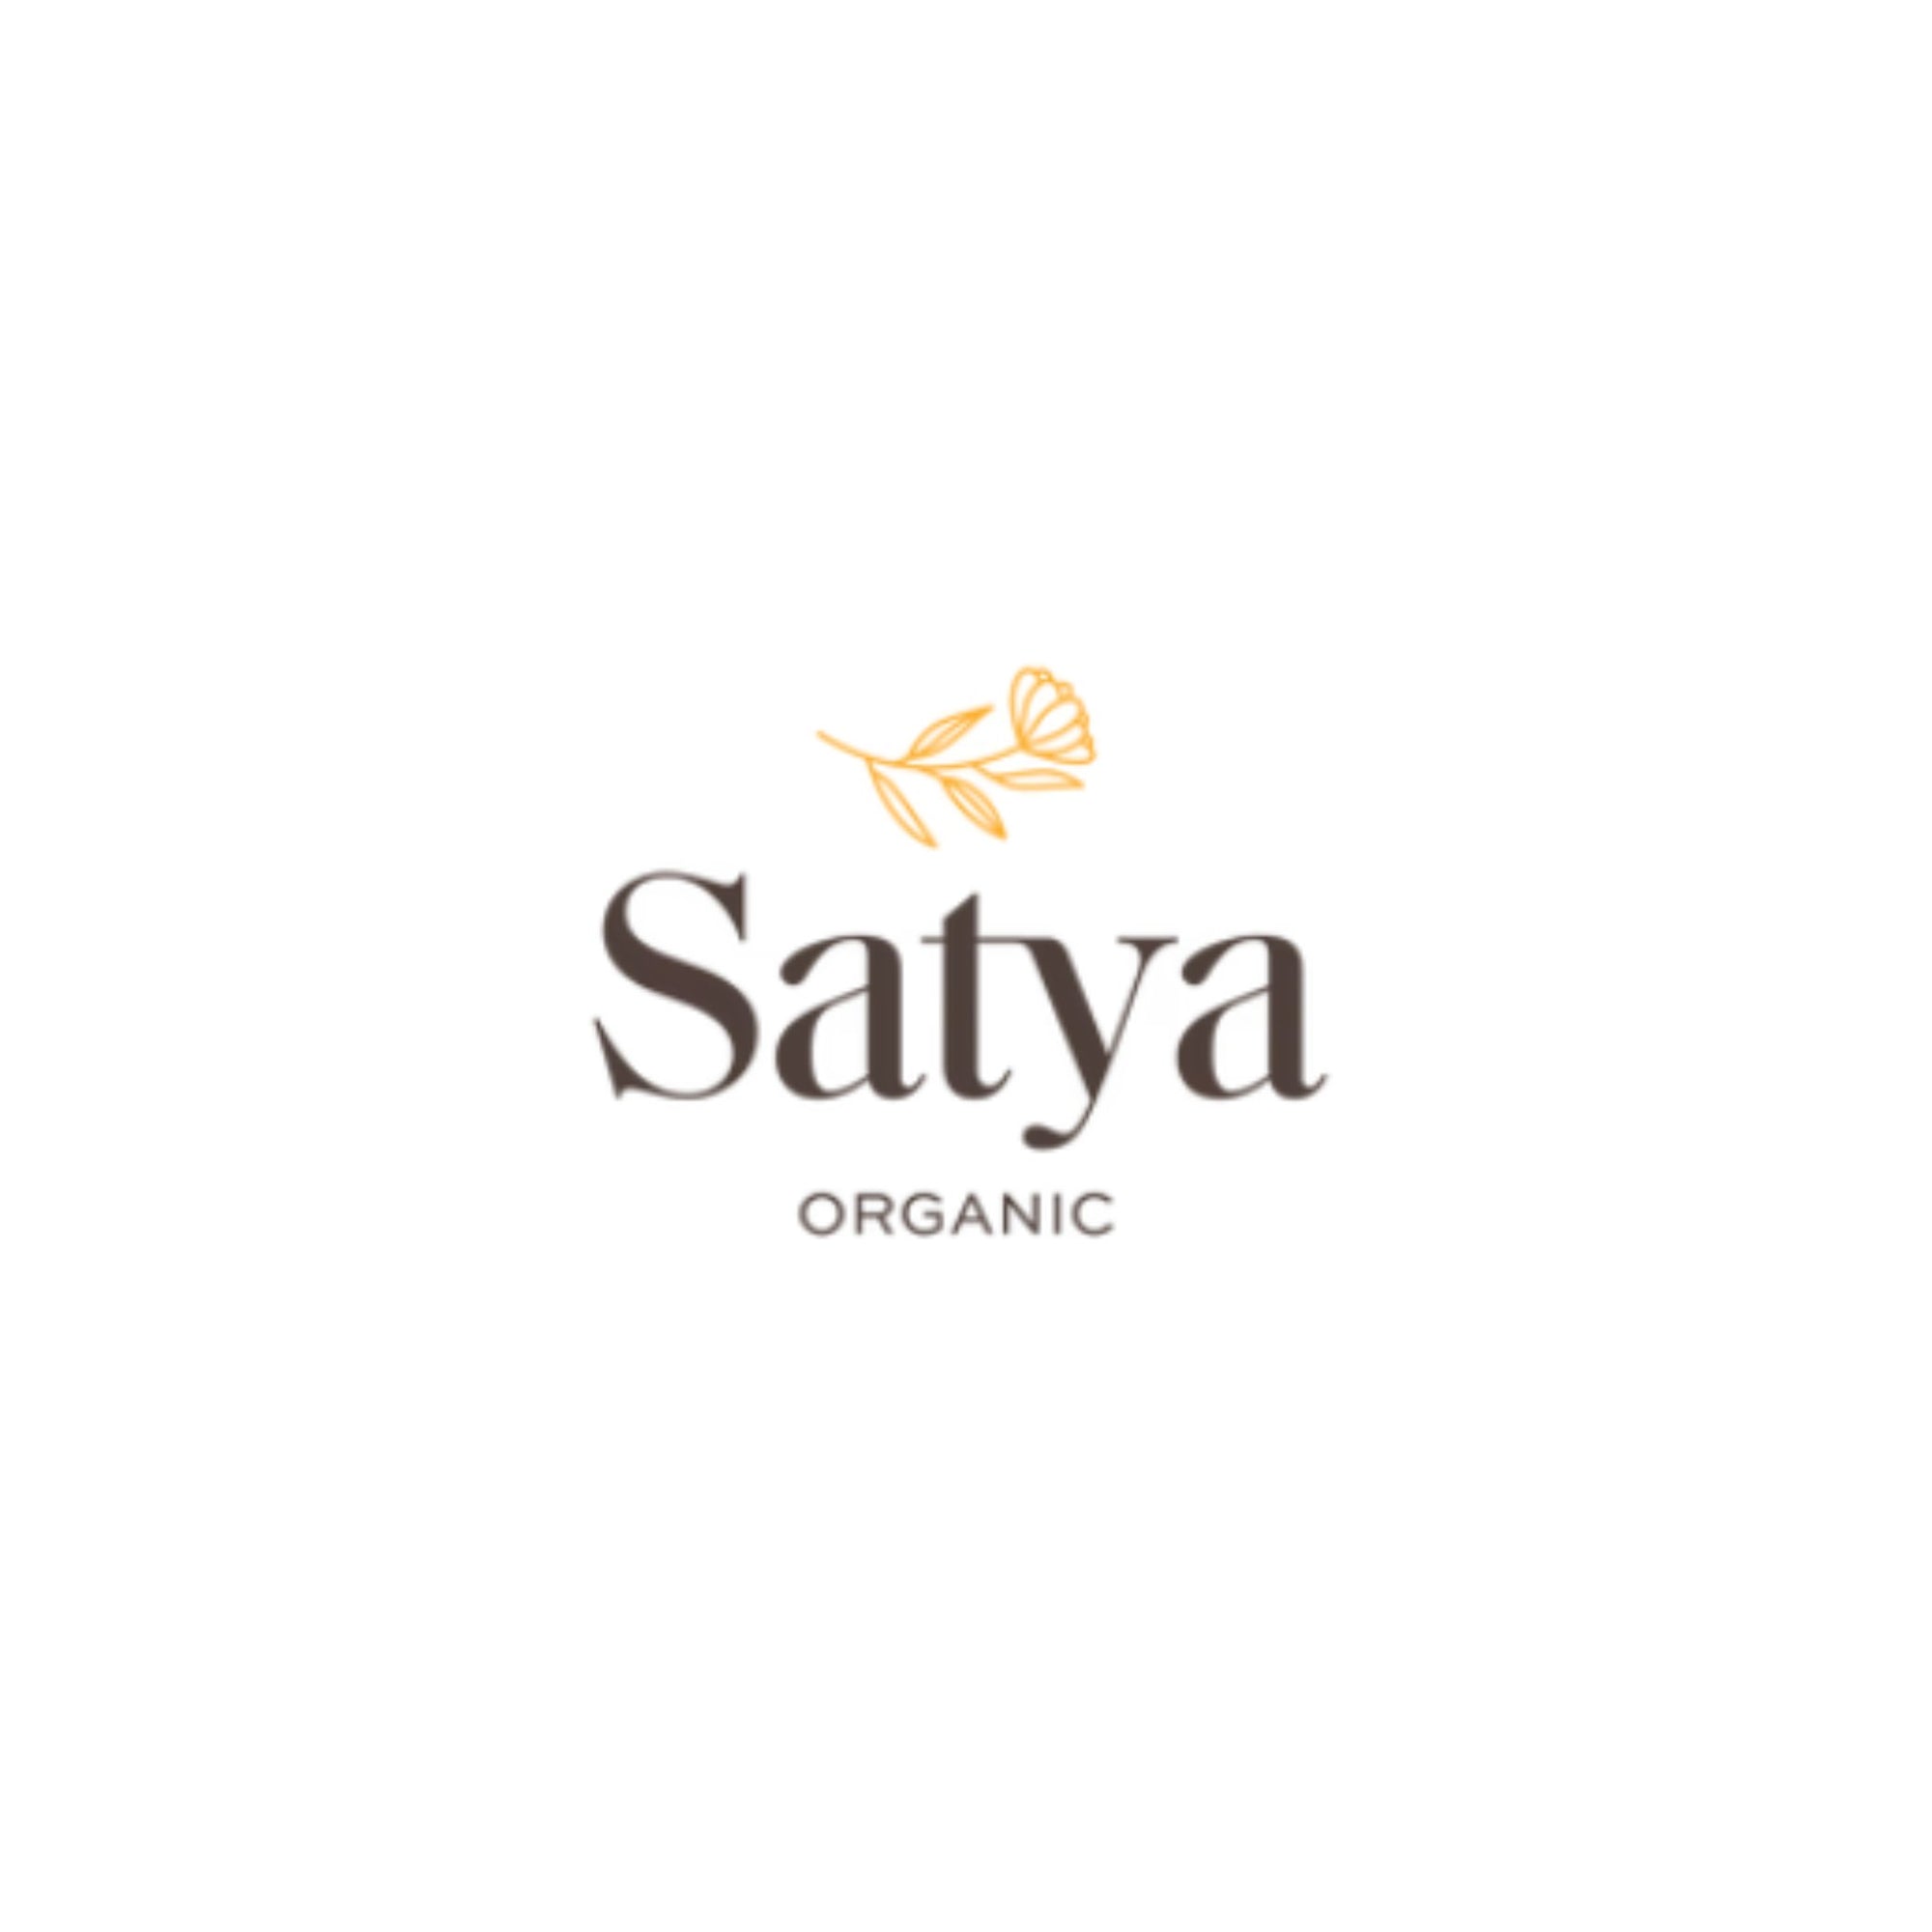 Satya - ORESTA clean beauty simplified